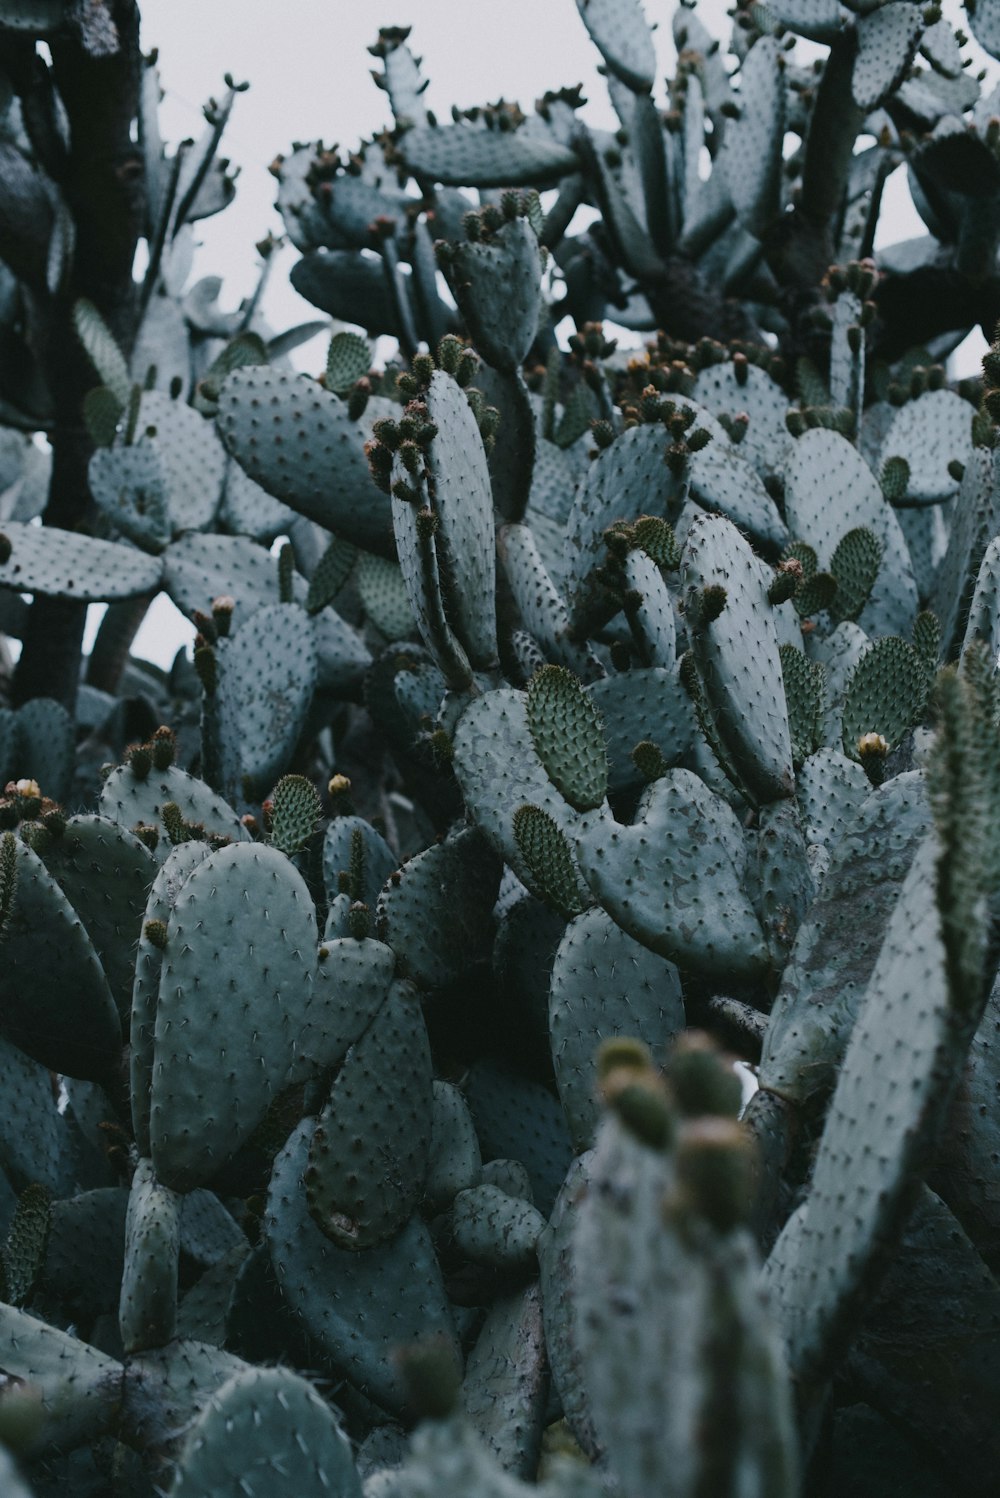 plante de cactus vert pendant la journée